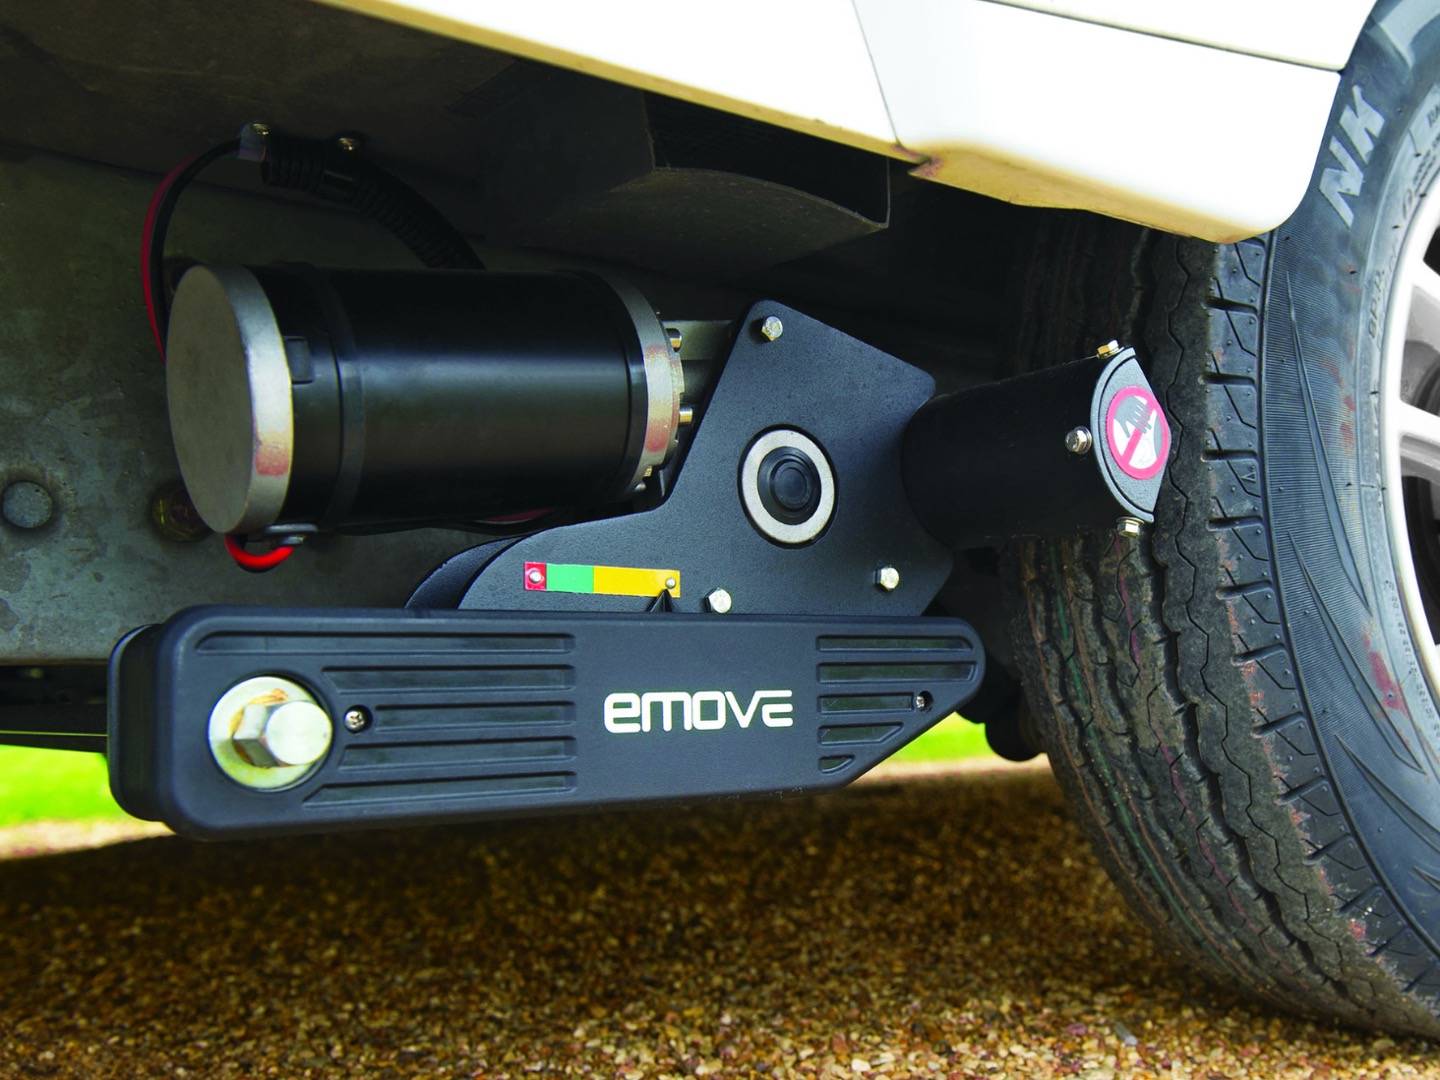 An Emove caravan motor mover